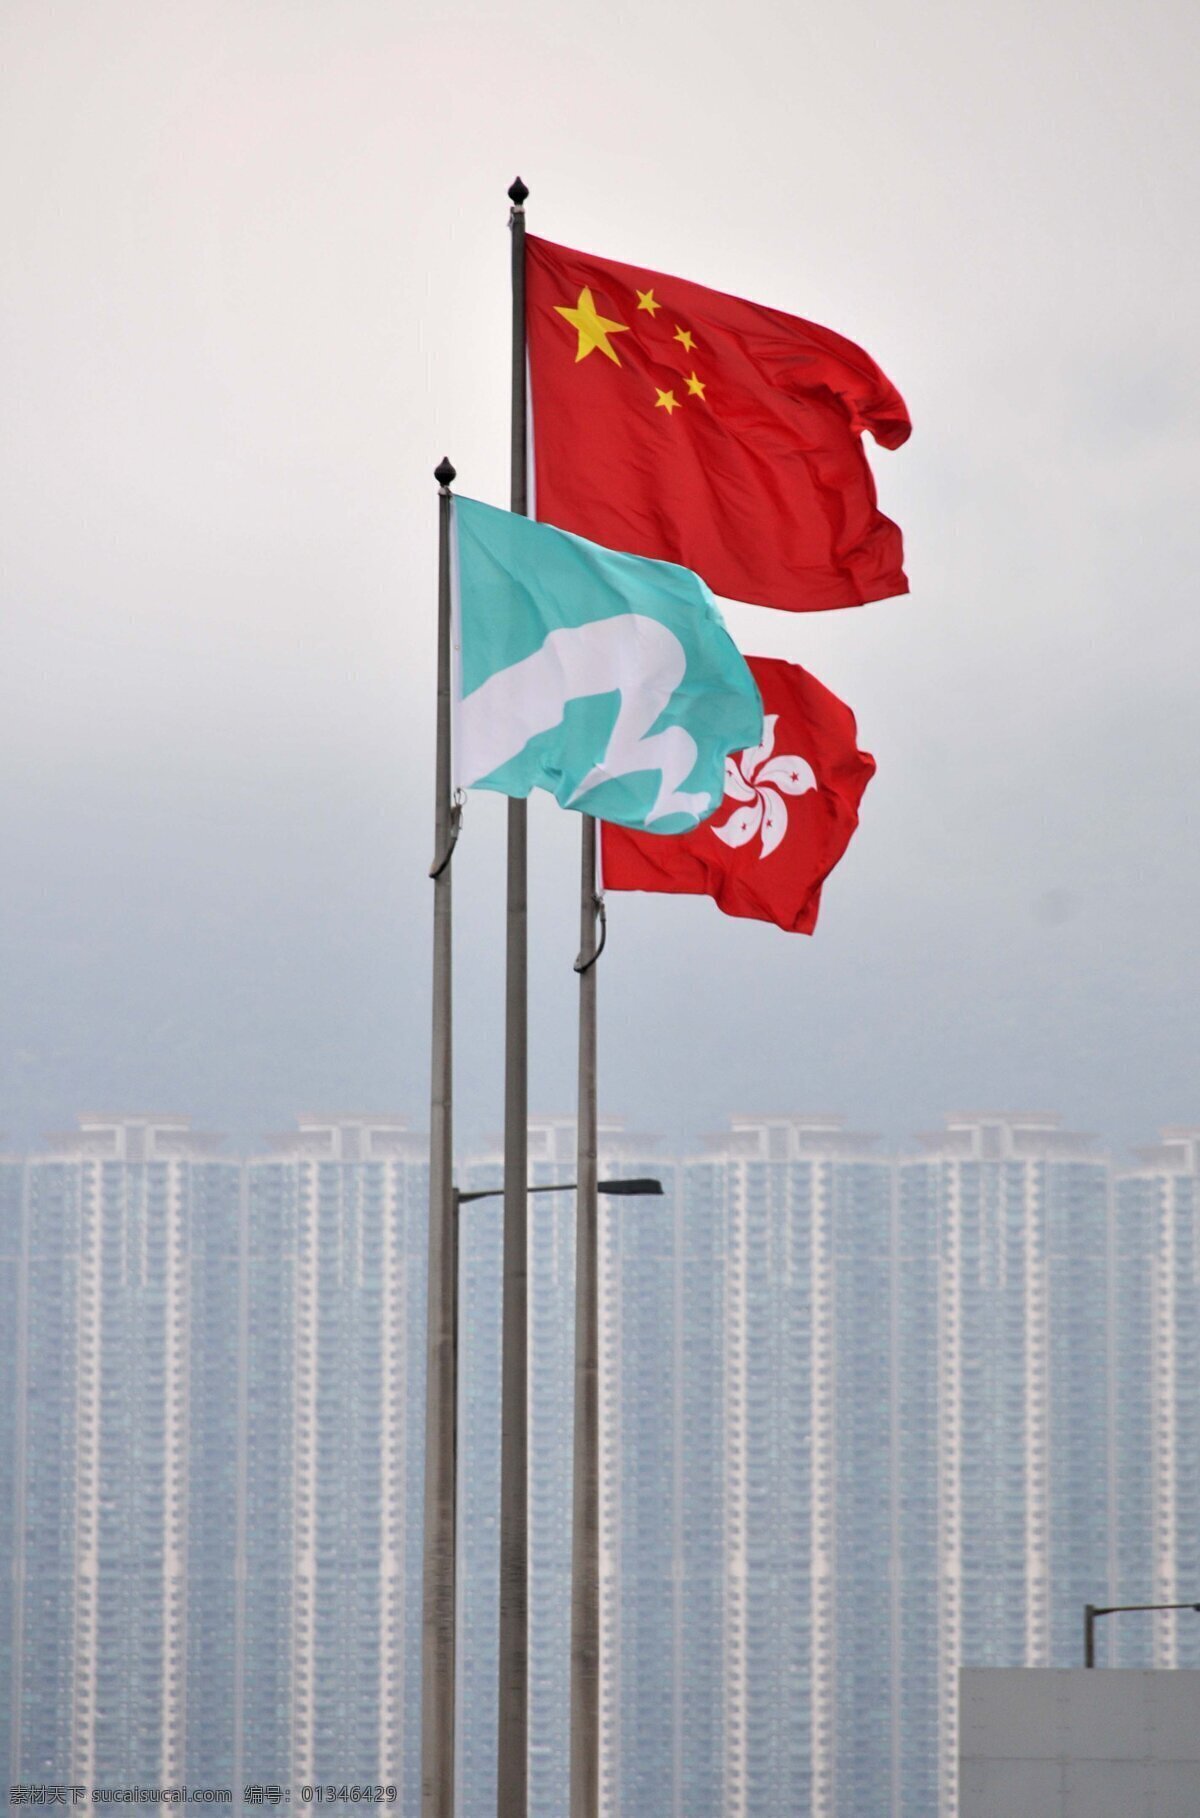 国旗 建筑 旗帜 文化艺术 现代建筑 香港旗帜 回归 1997年 历史意义 香港景观 300 psd源文件